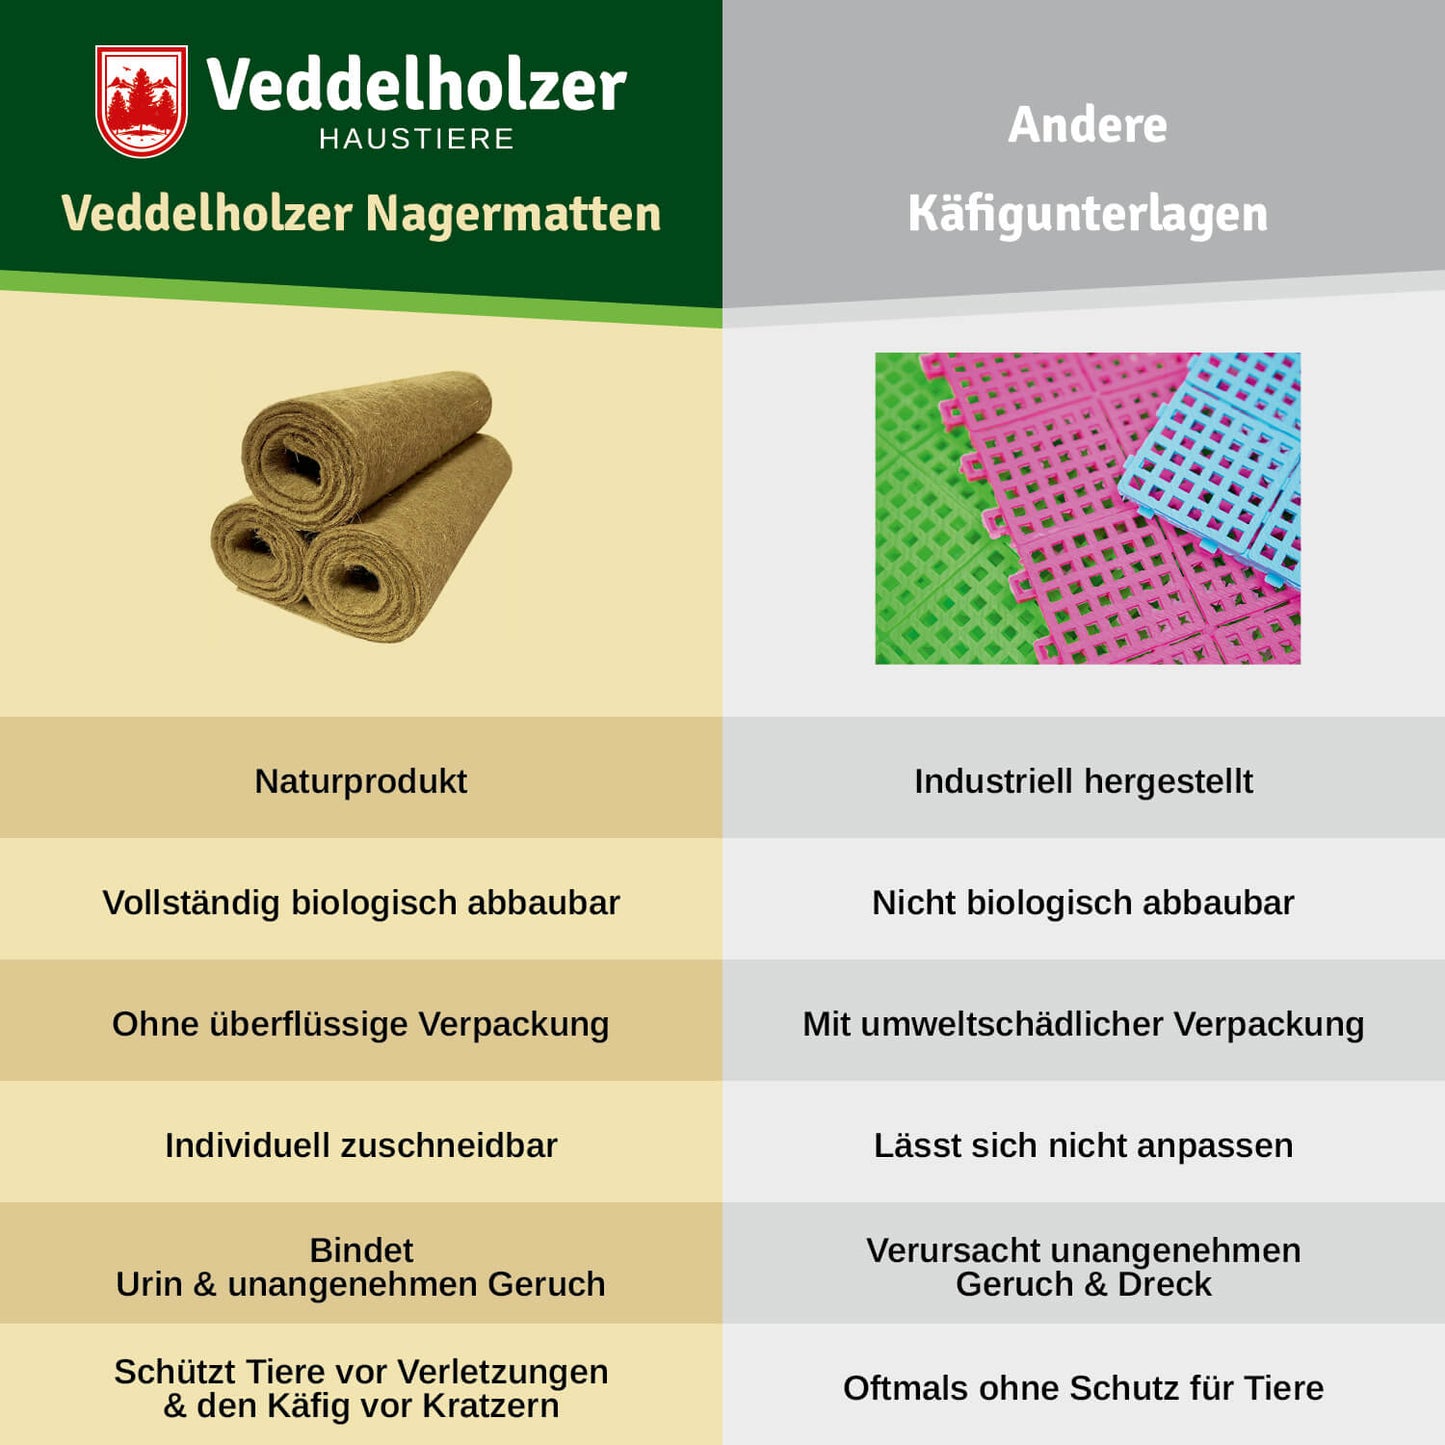 Veddelholzer Hanfmatten für Käfige & Gehege von Nagern.